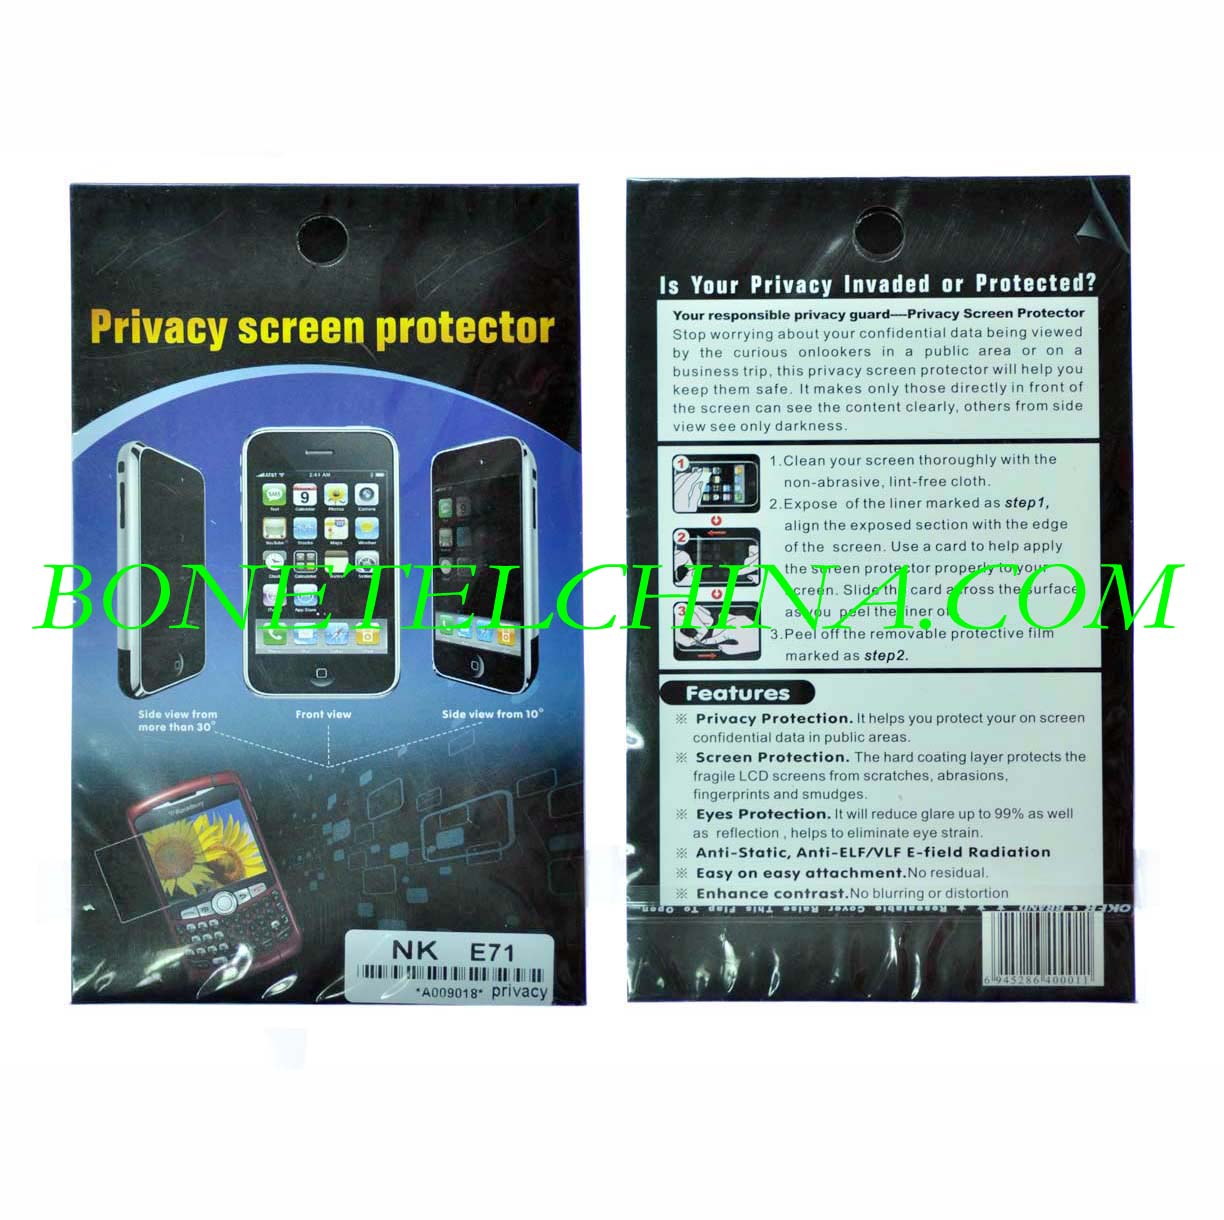 Nokia privacy screen protector E71